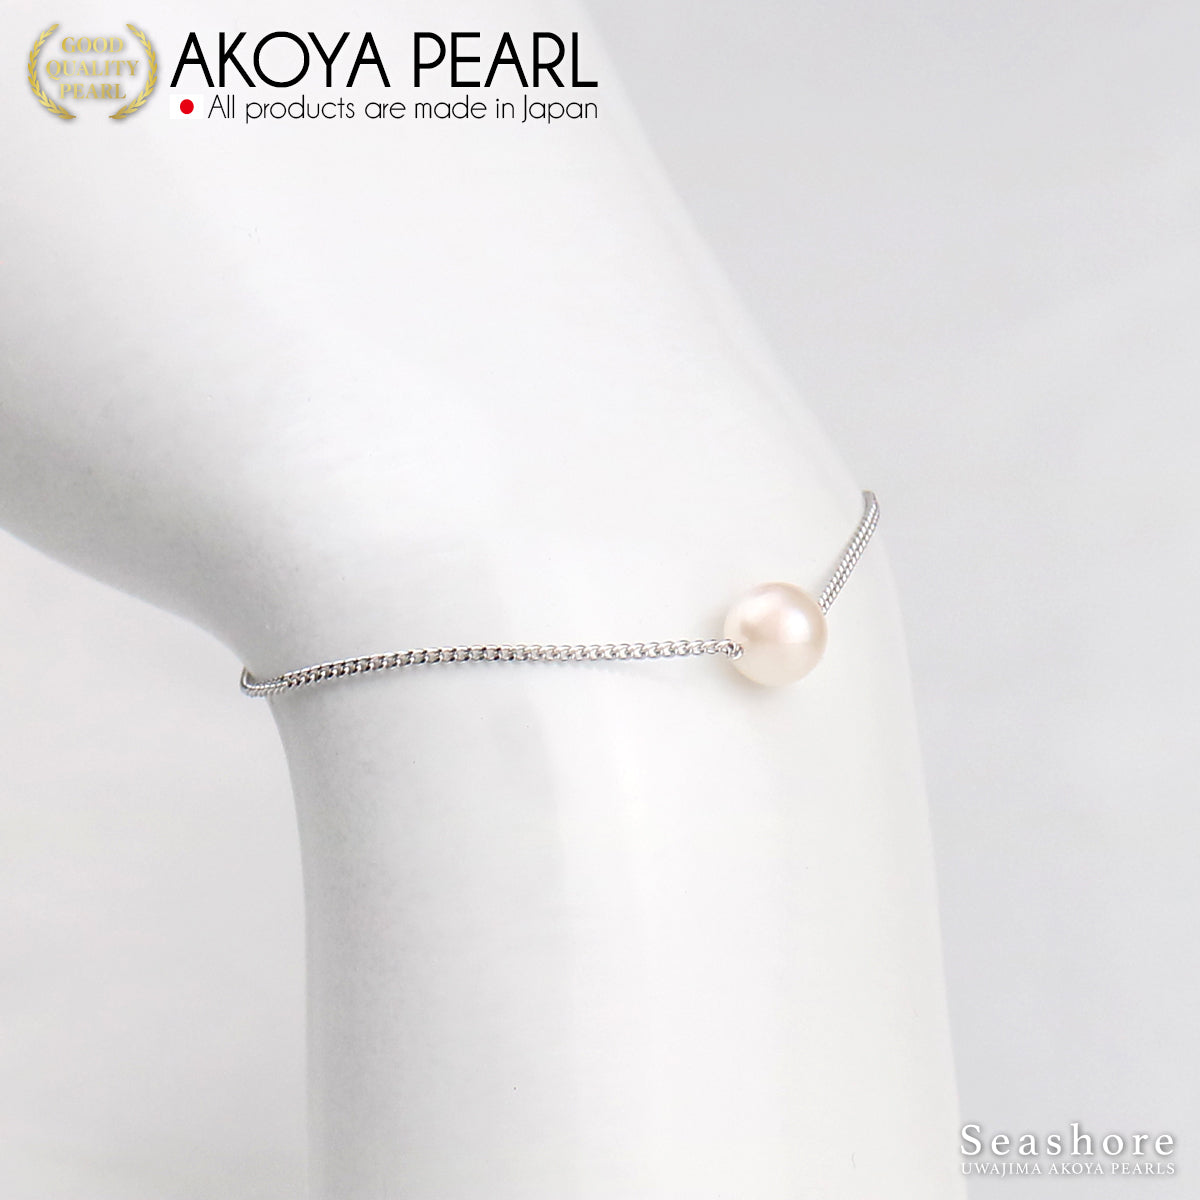 单颗珍珠手链 白色 7.0-8.0mm 黄铜铑/金 2 色 Akoya 珍珠